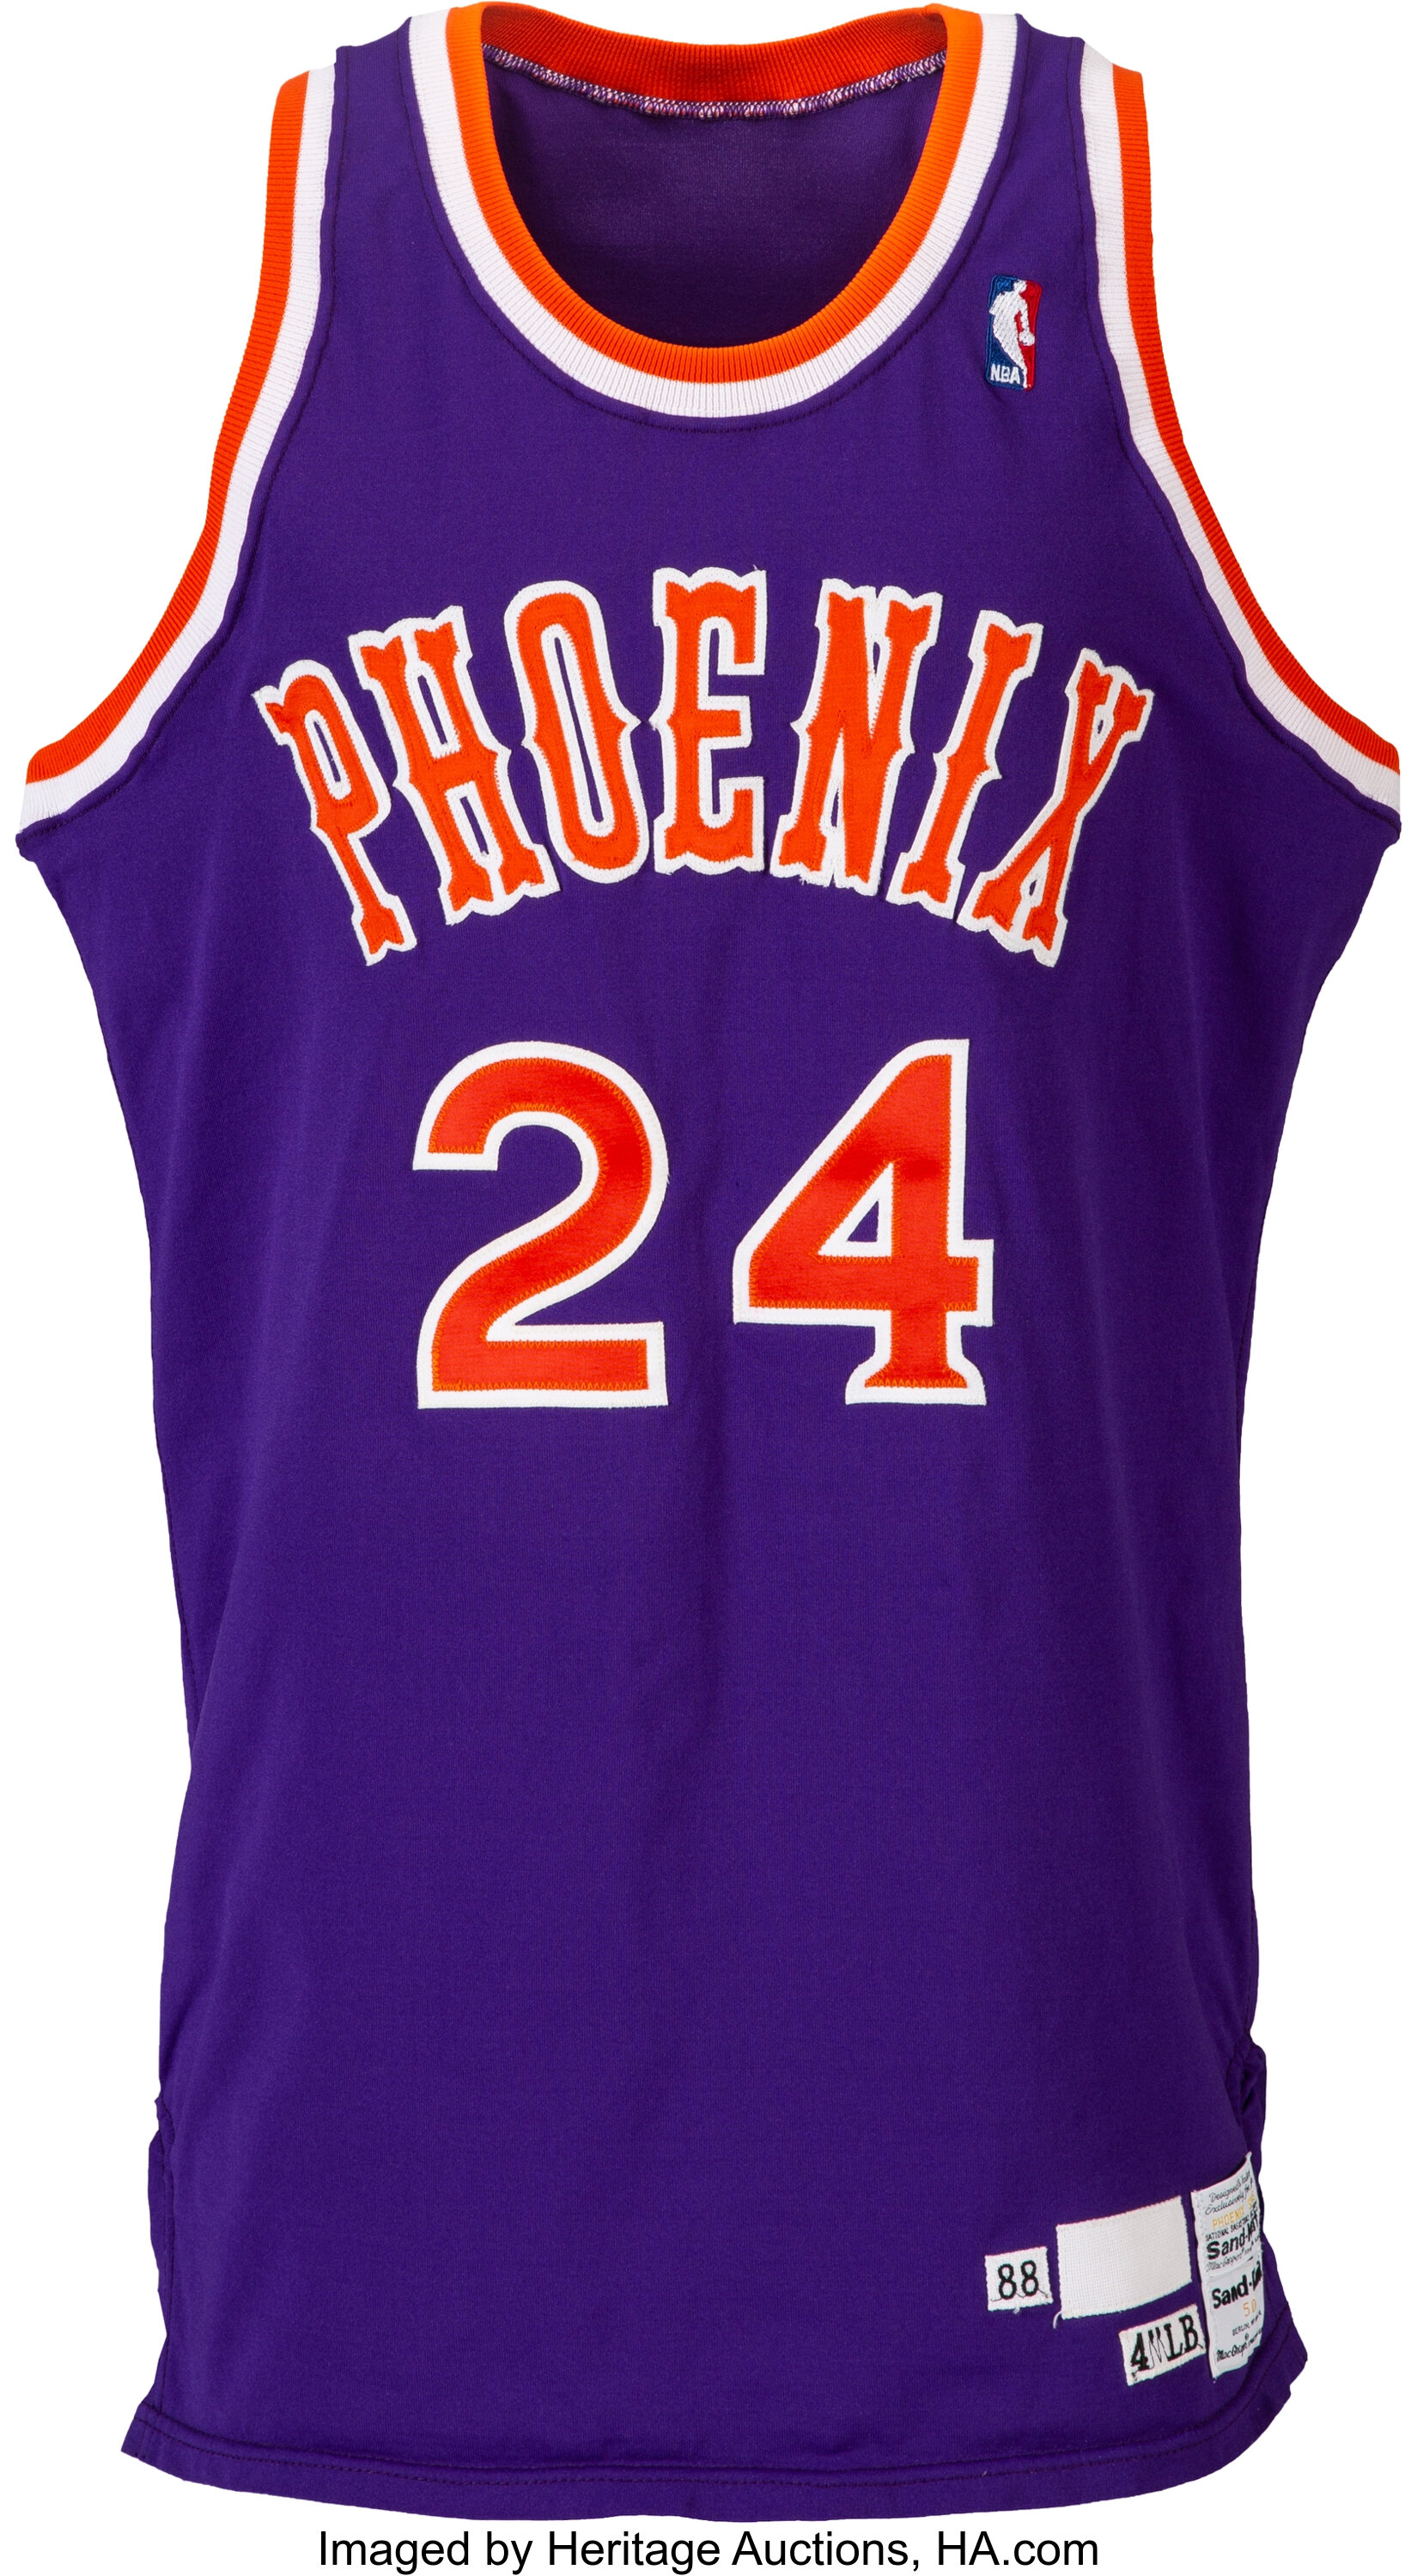 1988-89 Tom Chambers Game Worn Phoenix Suns Uniform with Equipment